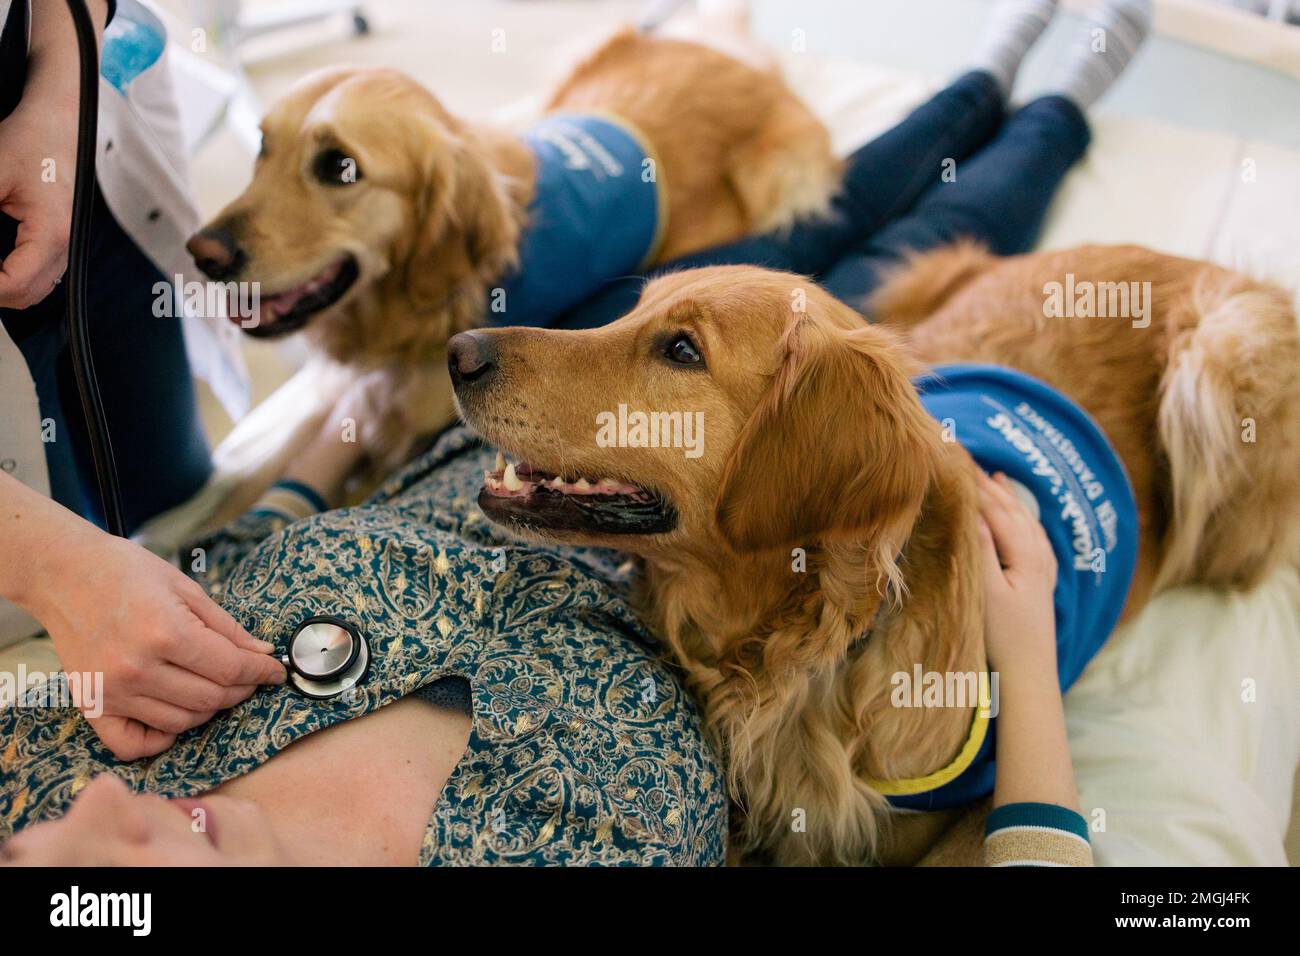 Handi’chiens”, französischer Verband, der Assistenzhunde für Erwachsene und Kinder mit eingeschränkter Mobilität sowie körperlichen und/oder geistigen Behinderungen anbietet. Zwei Goldstücke Stockfoto